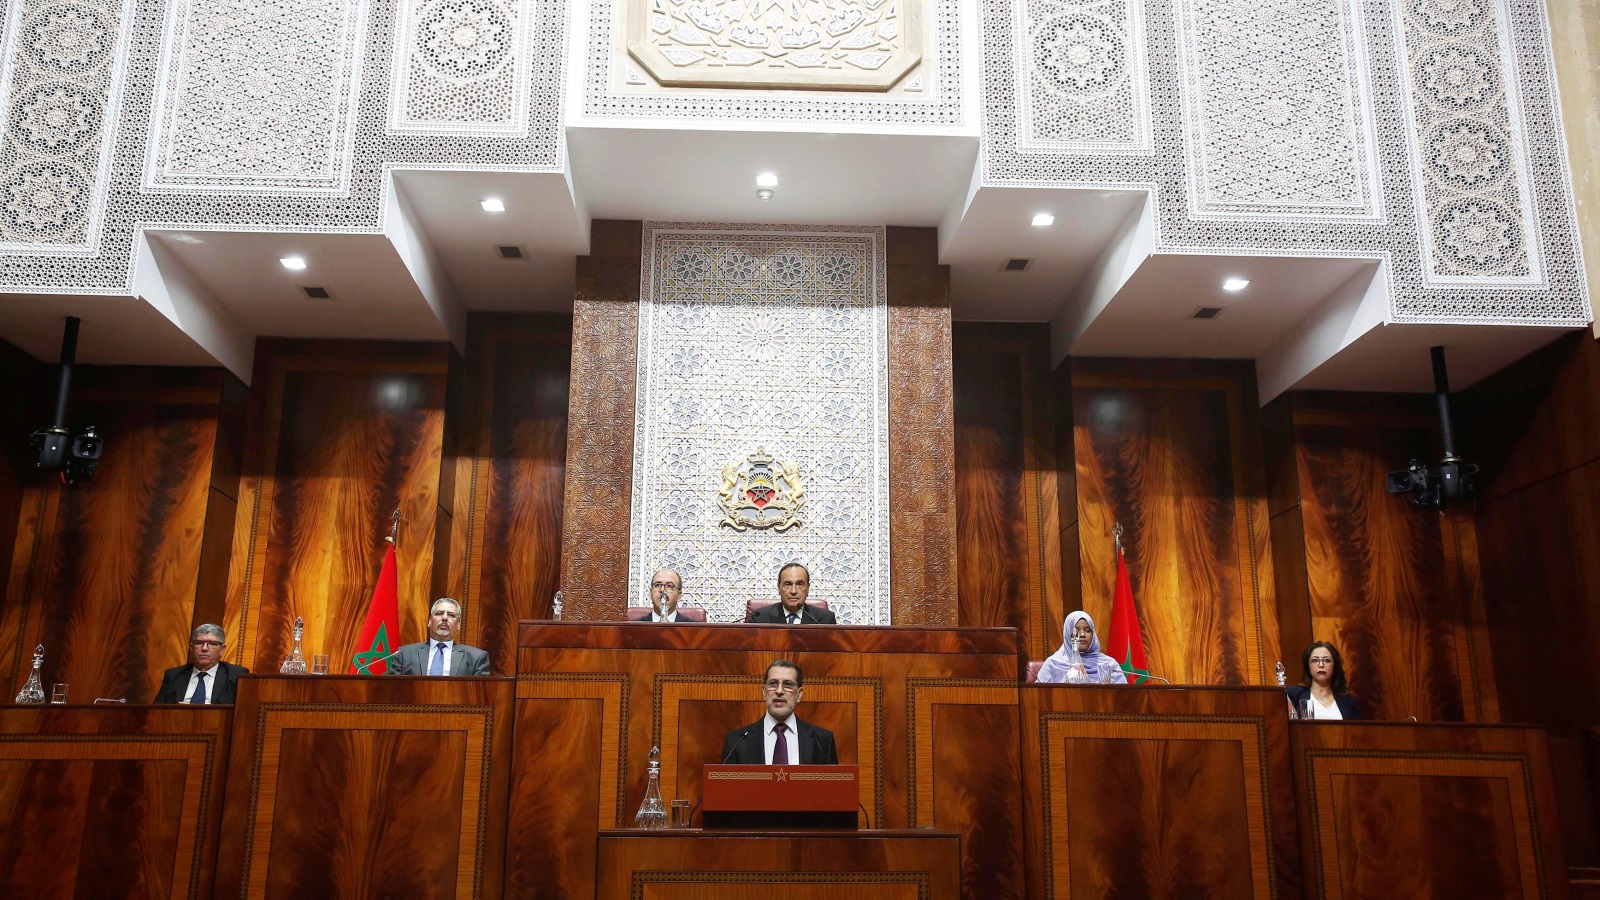 المعارضة اليوم مطالبة بلعب دورها في تحريك المسؤولية السياسية للحكومة عن الأوضاع المزرية التي بات يعيشها المواطن المغربي